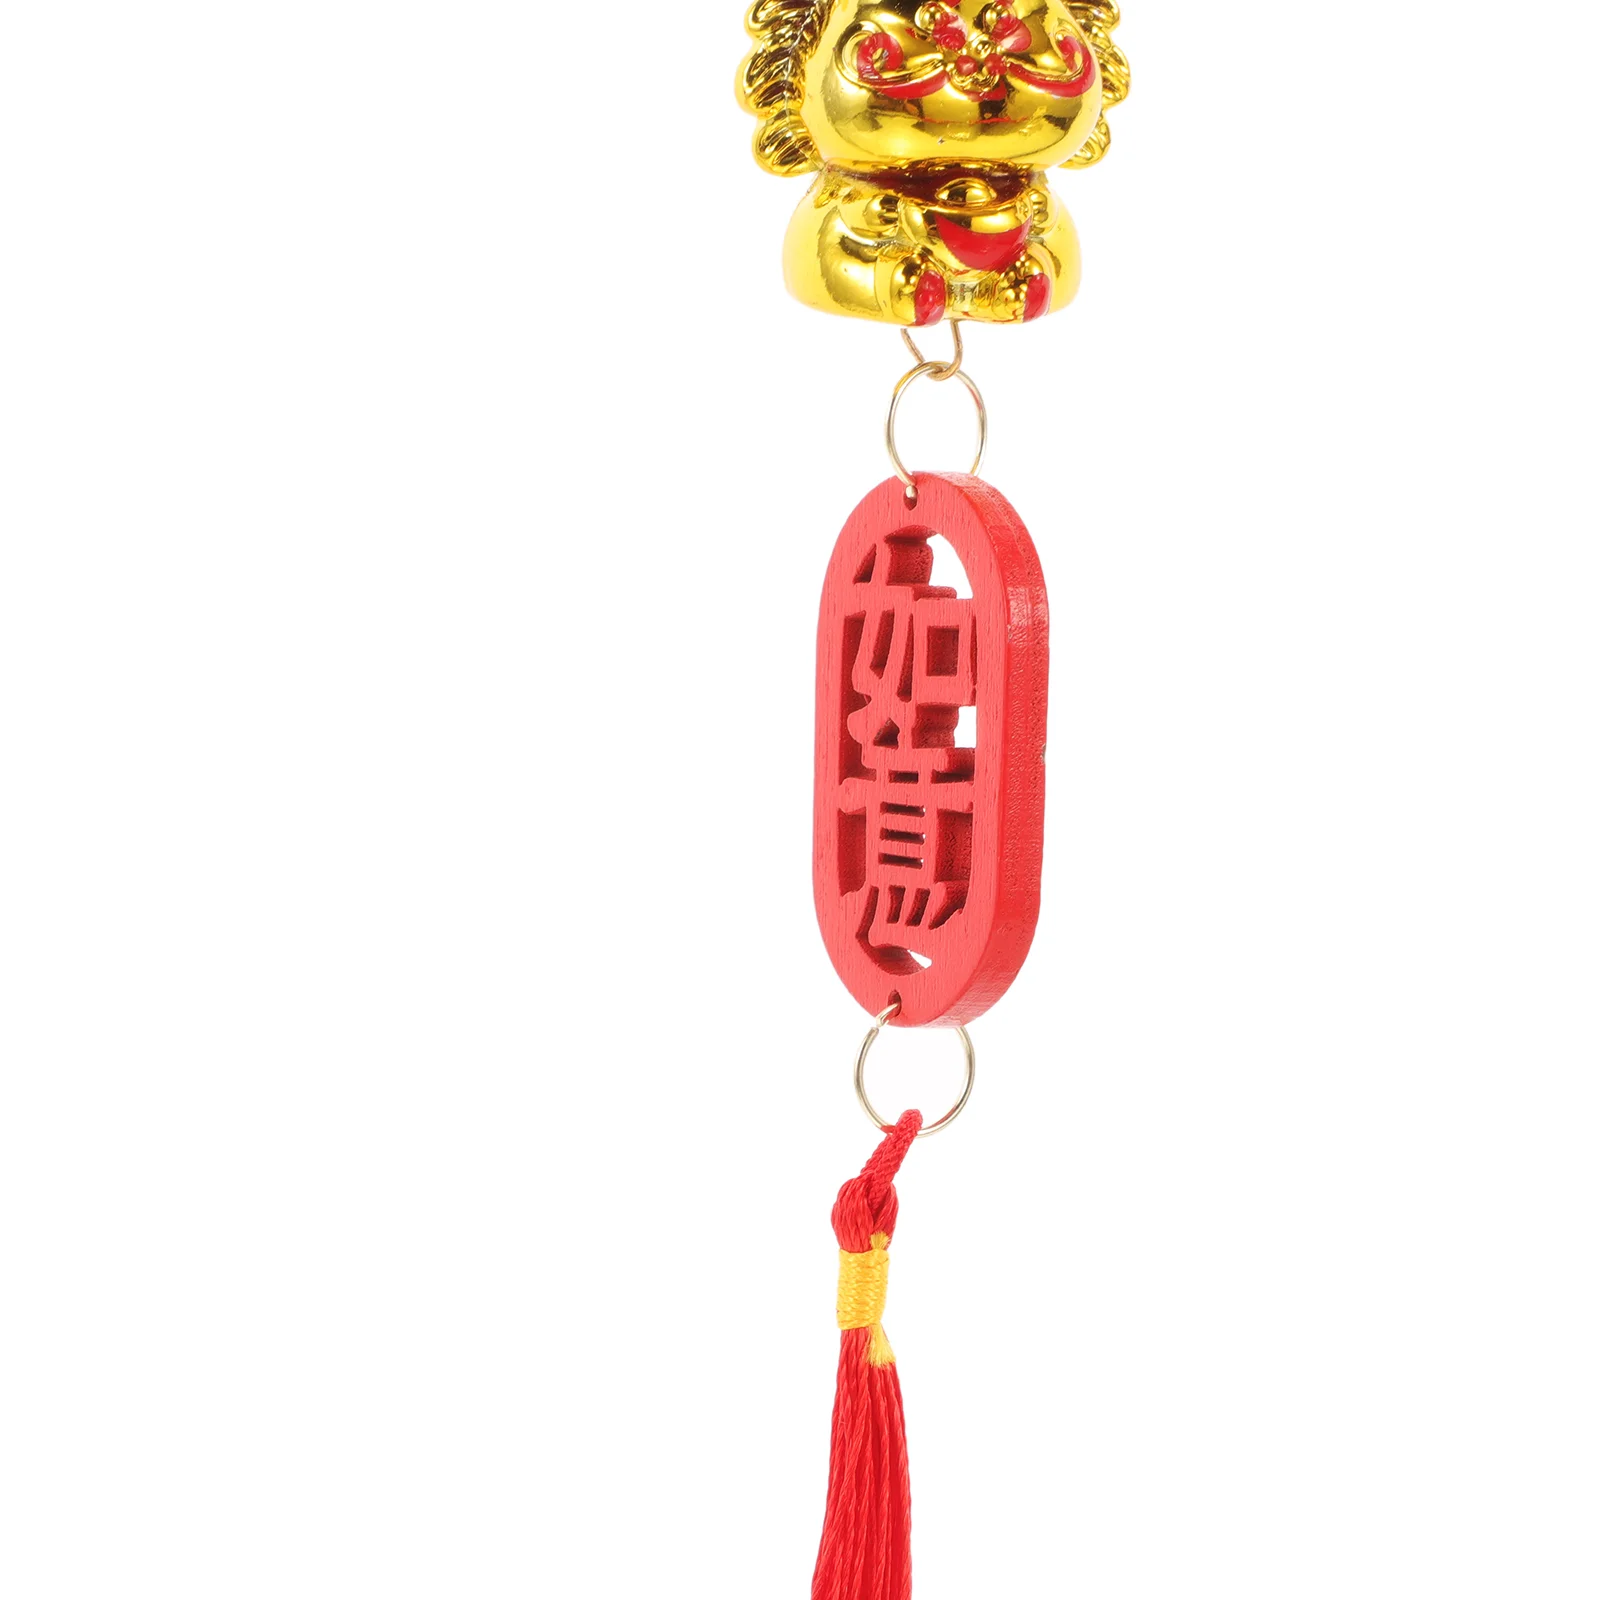 5 Adet Çin Yılı Ejderha Asılı Süsleme Bonsai Kolye Yeni Yıl Dekorasyon